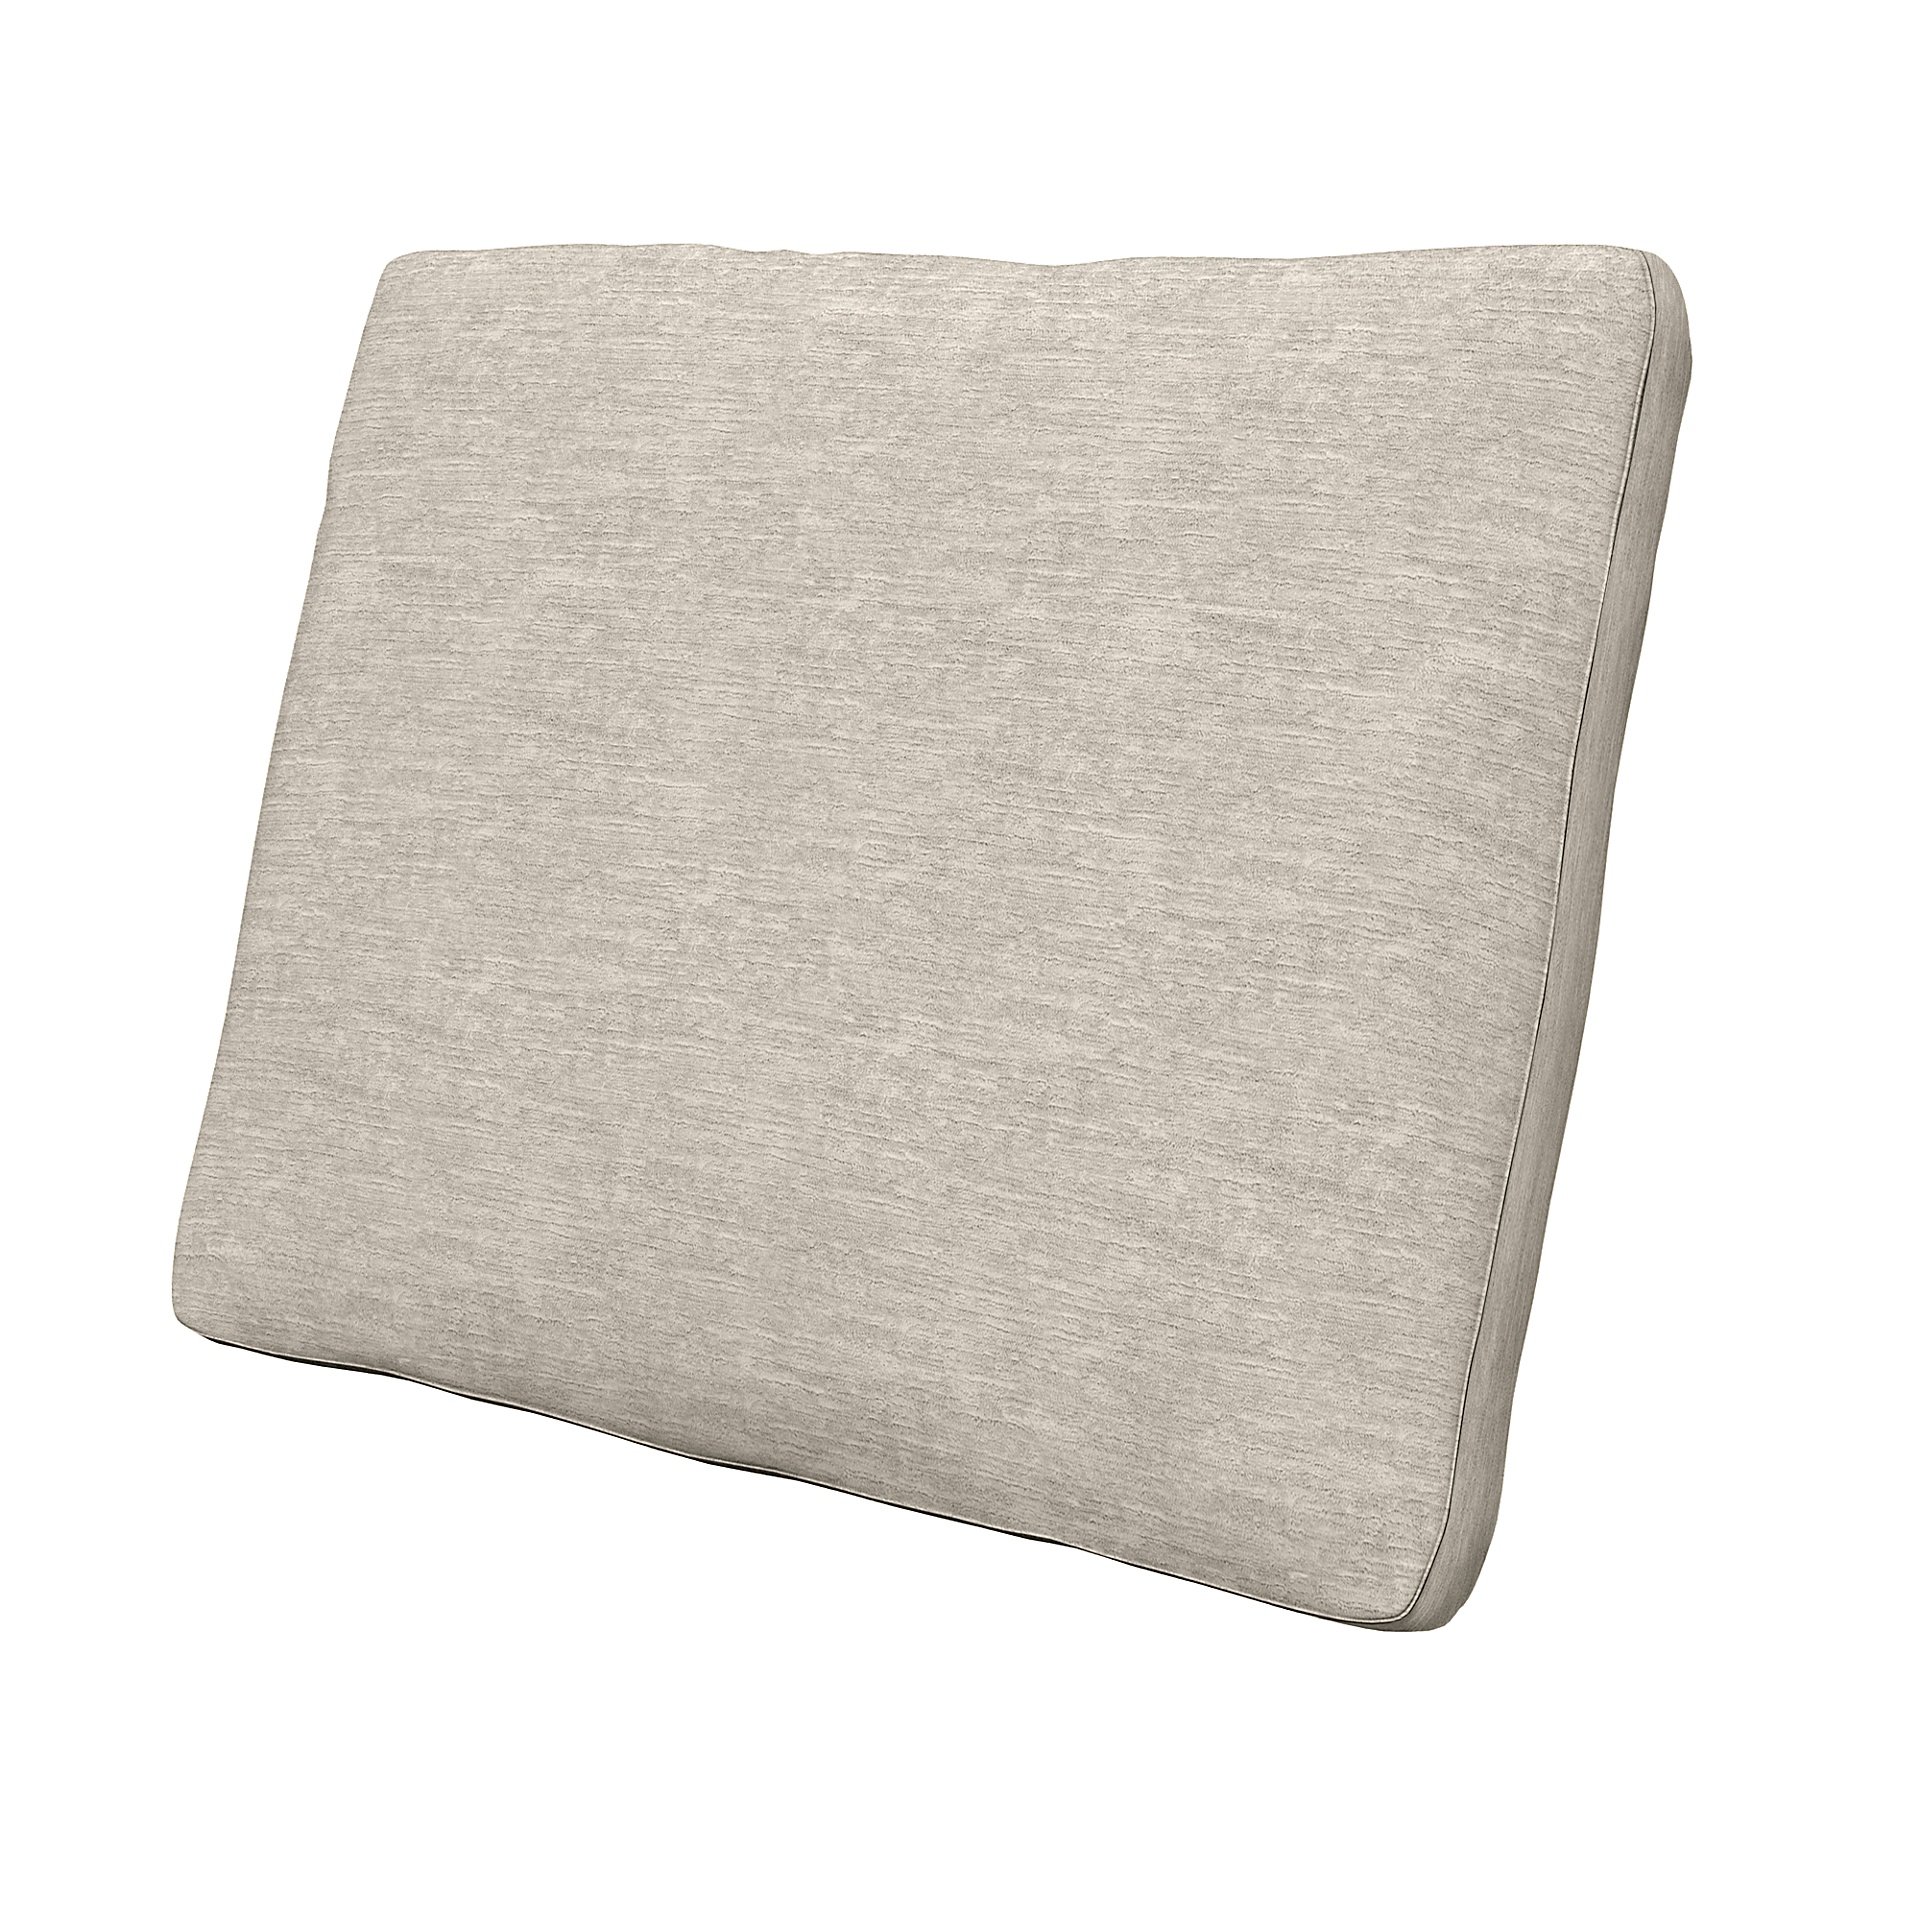 IKEA - Cushion Cover Karlstad 58x48x5 cm, Natural White, Velvet - Bemz